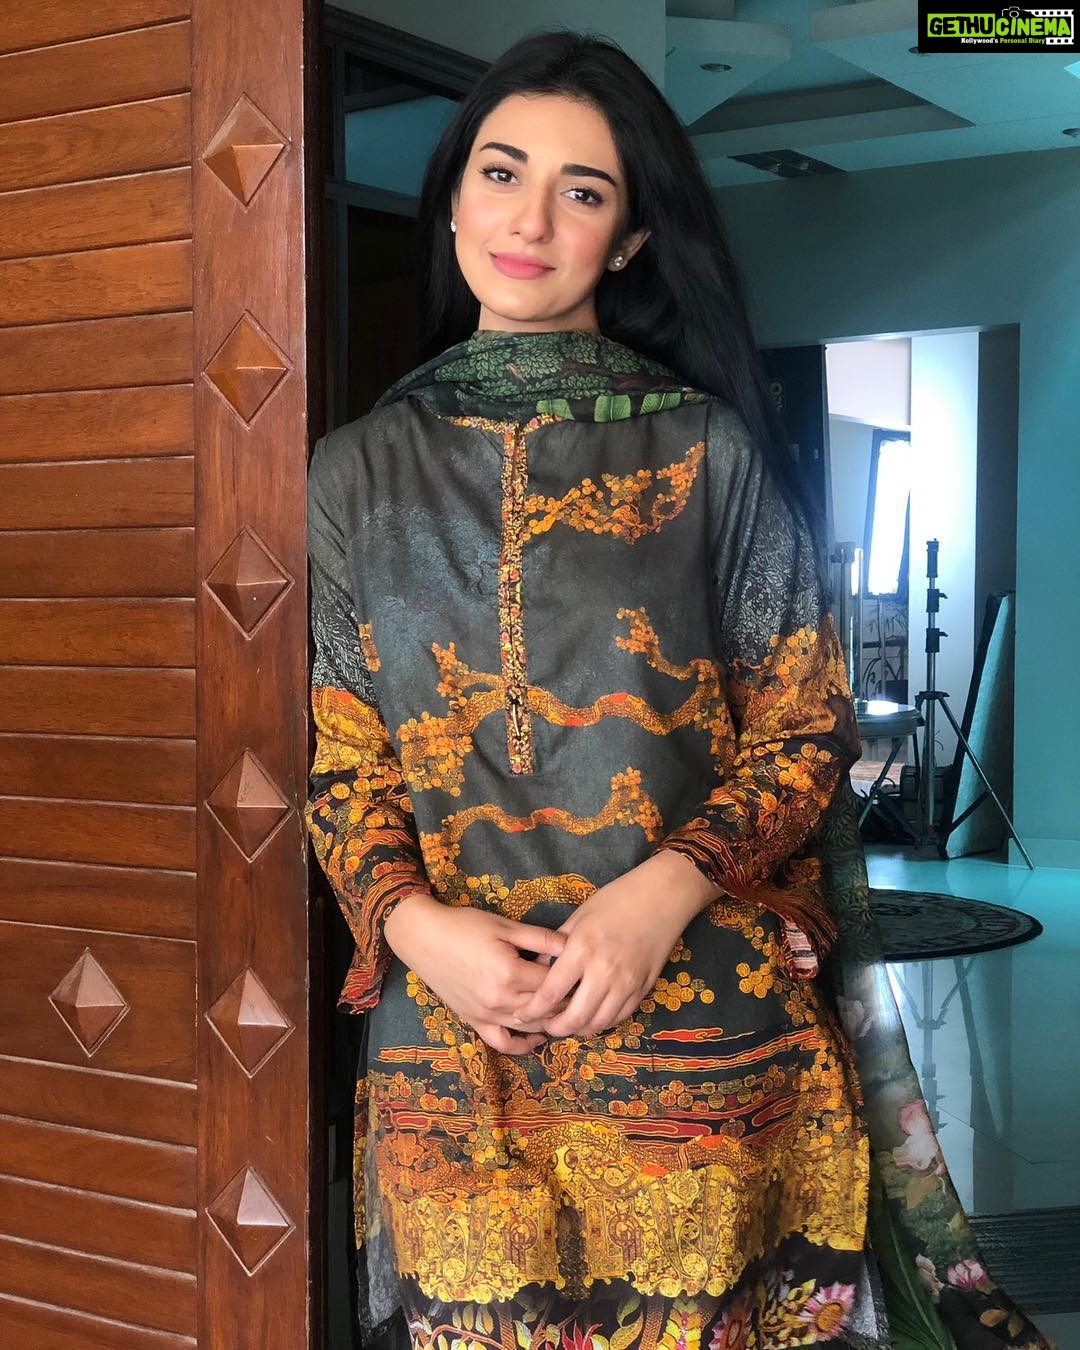 Actress Sarah Khan Instagram Photos and Posts April 2019 - Gethu Cinema